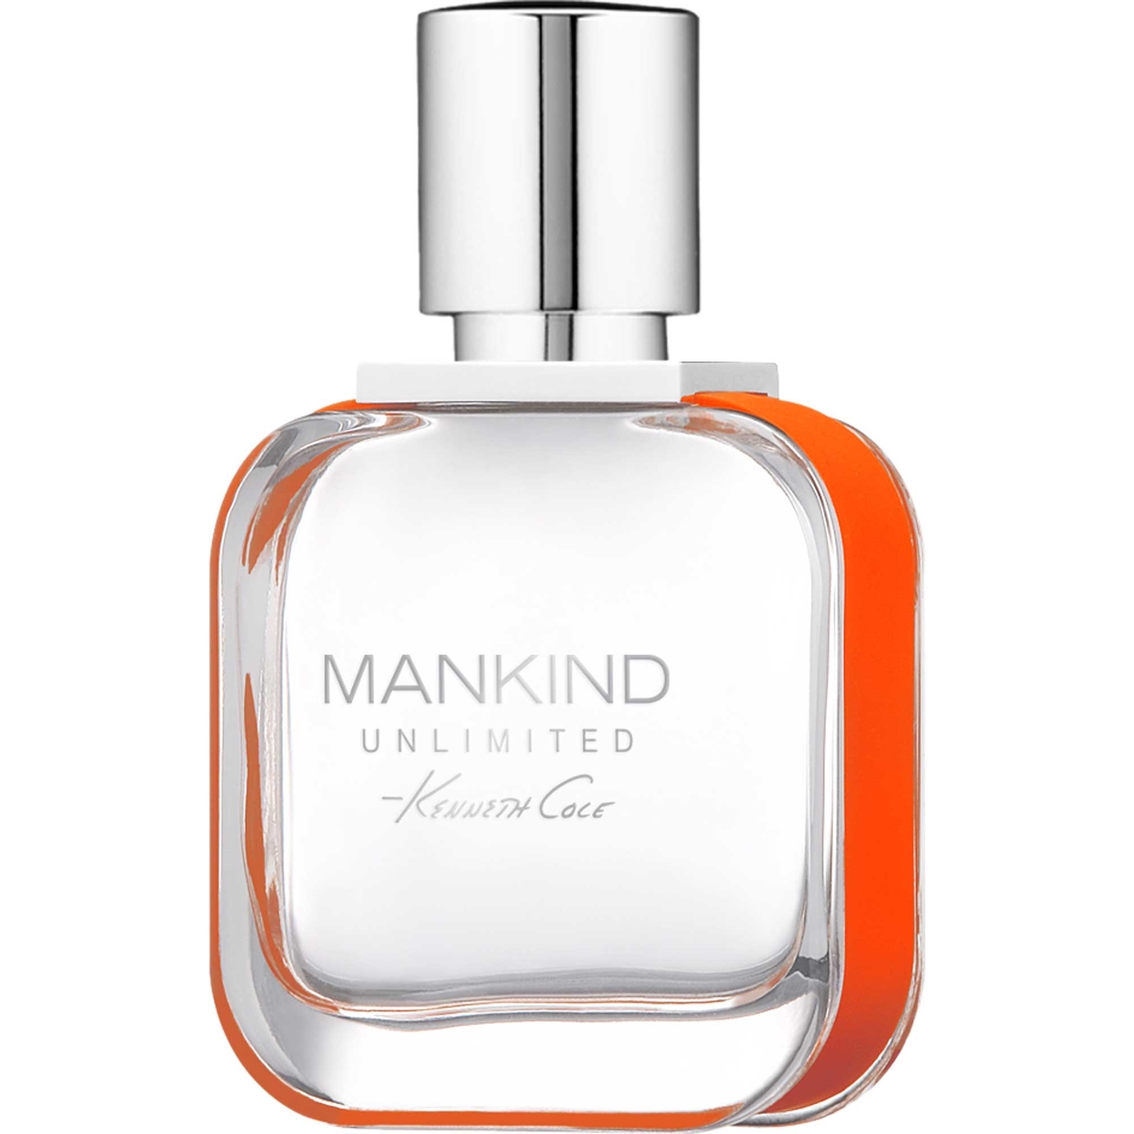 Kenneth Cole Mankind Unlimited Eau De Toilette Spray 1.7 Oz. | Men's ...